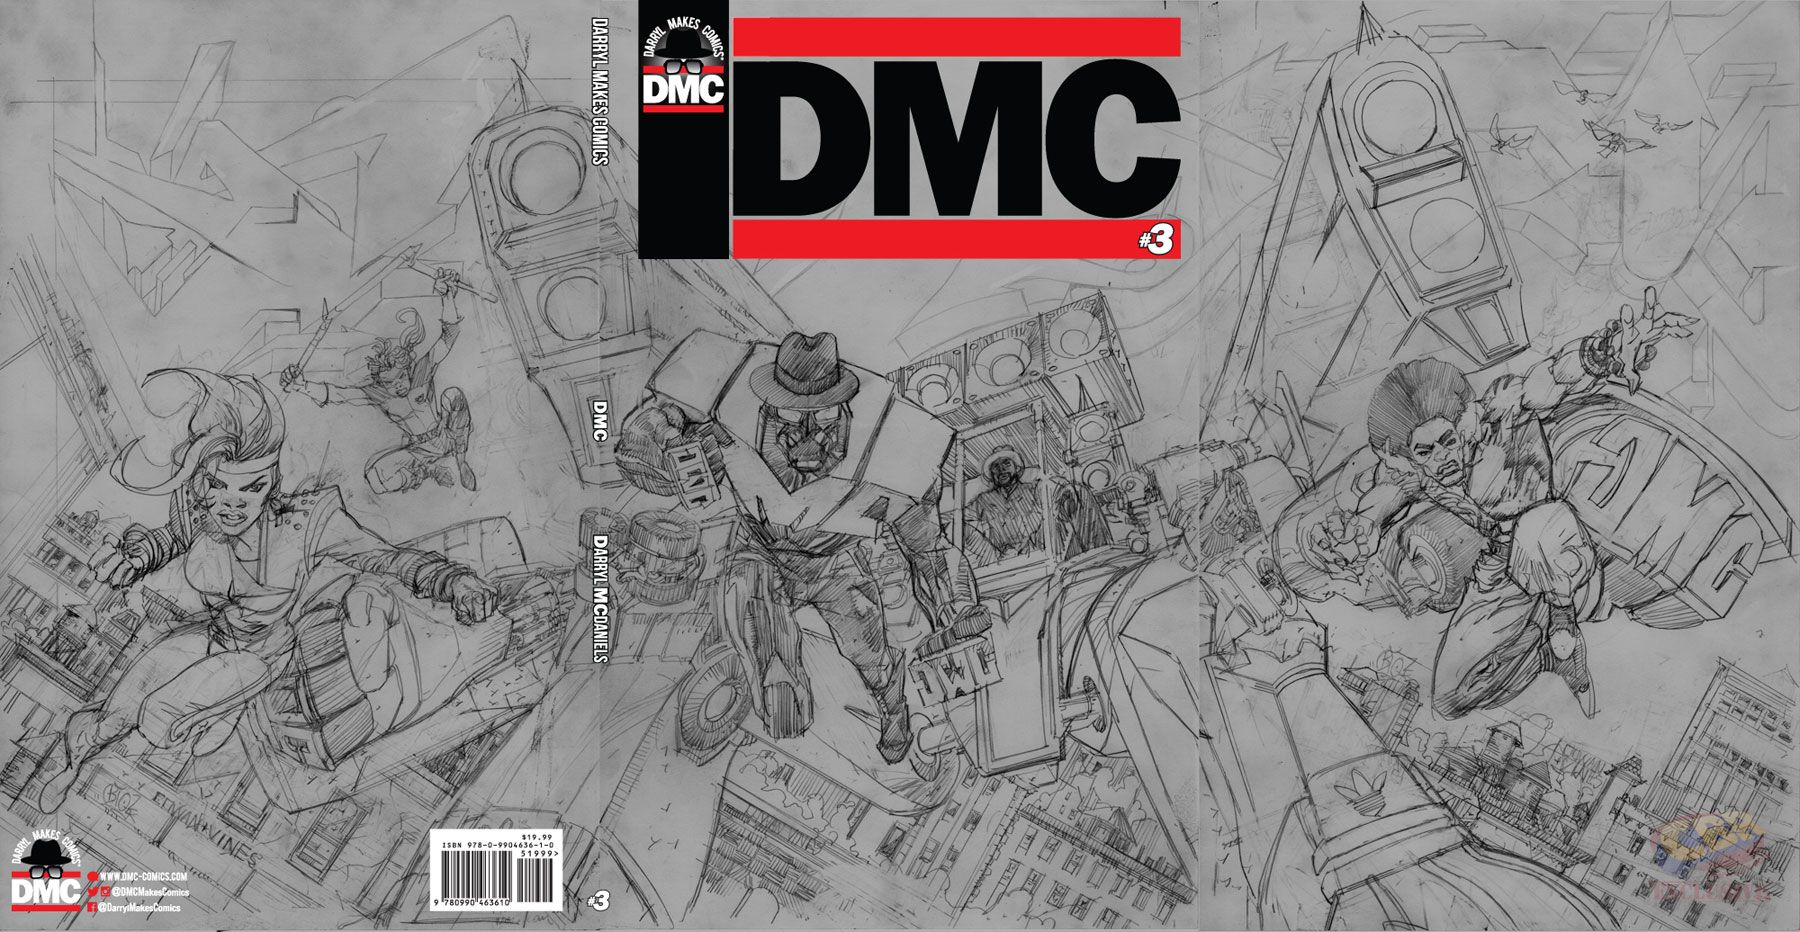 Pencils for DMC #3 cover